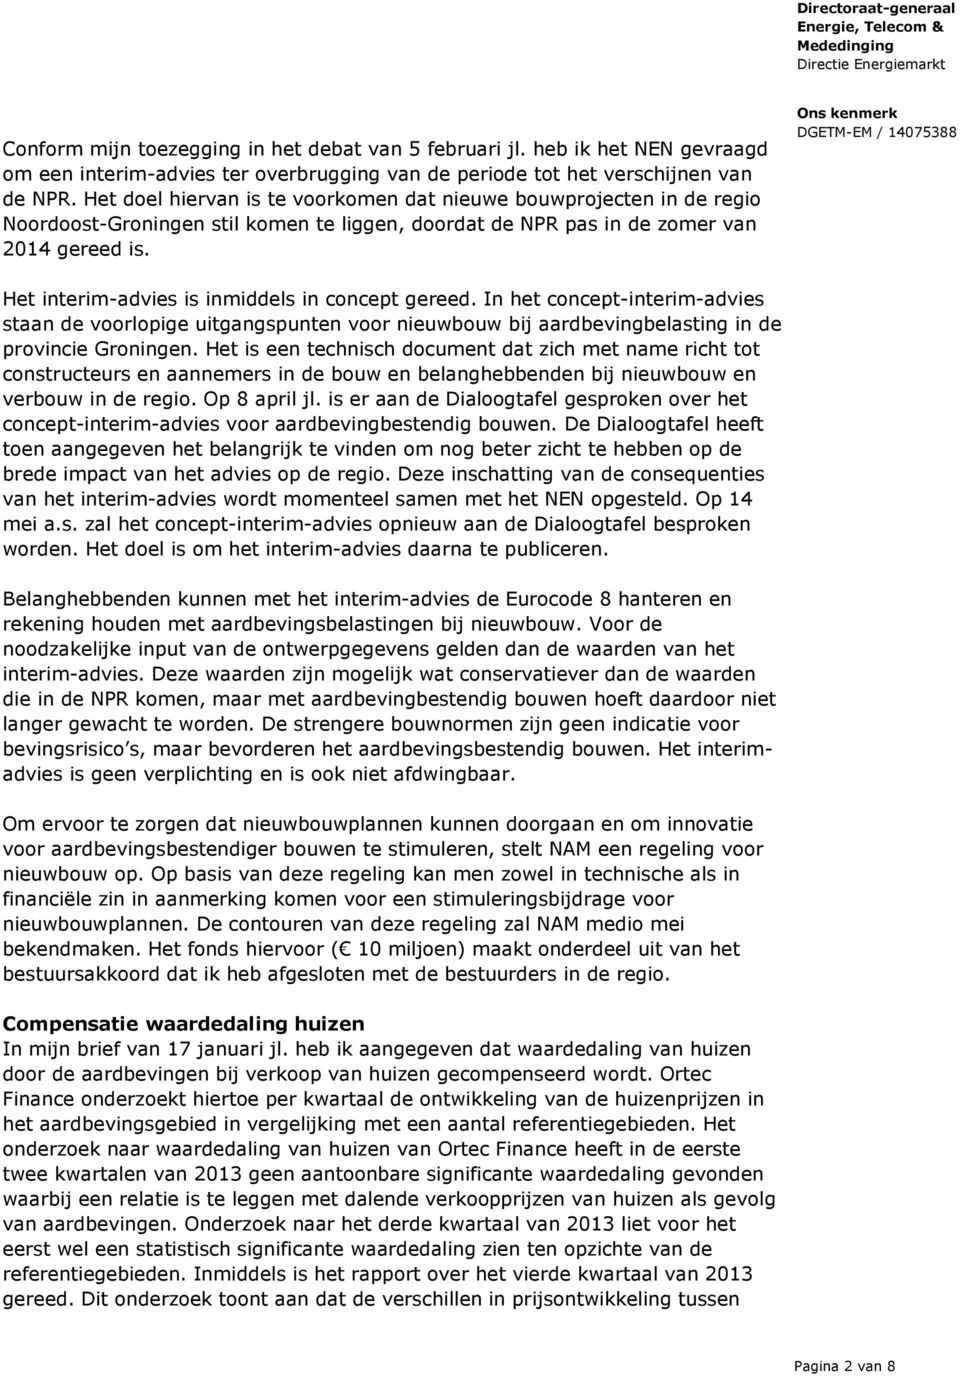 Het interim-advies is inmiddels in concept gereed. In het concept-interim-advies staan de voorlopige uitgangspunten voor nieuwbouw bij aardbevingbelasting in de provincie Groningen.